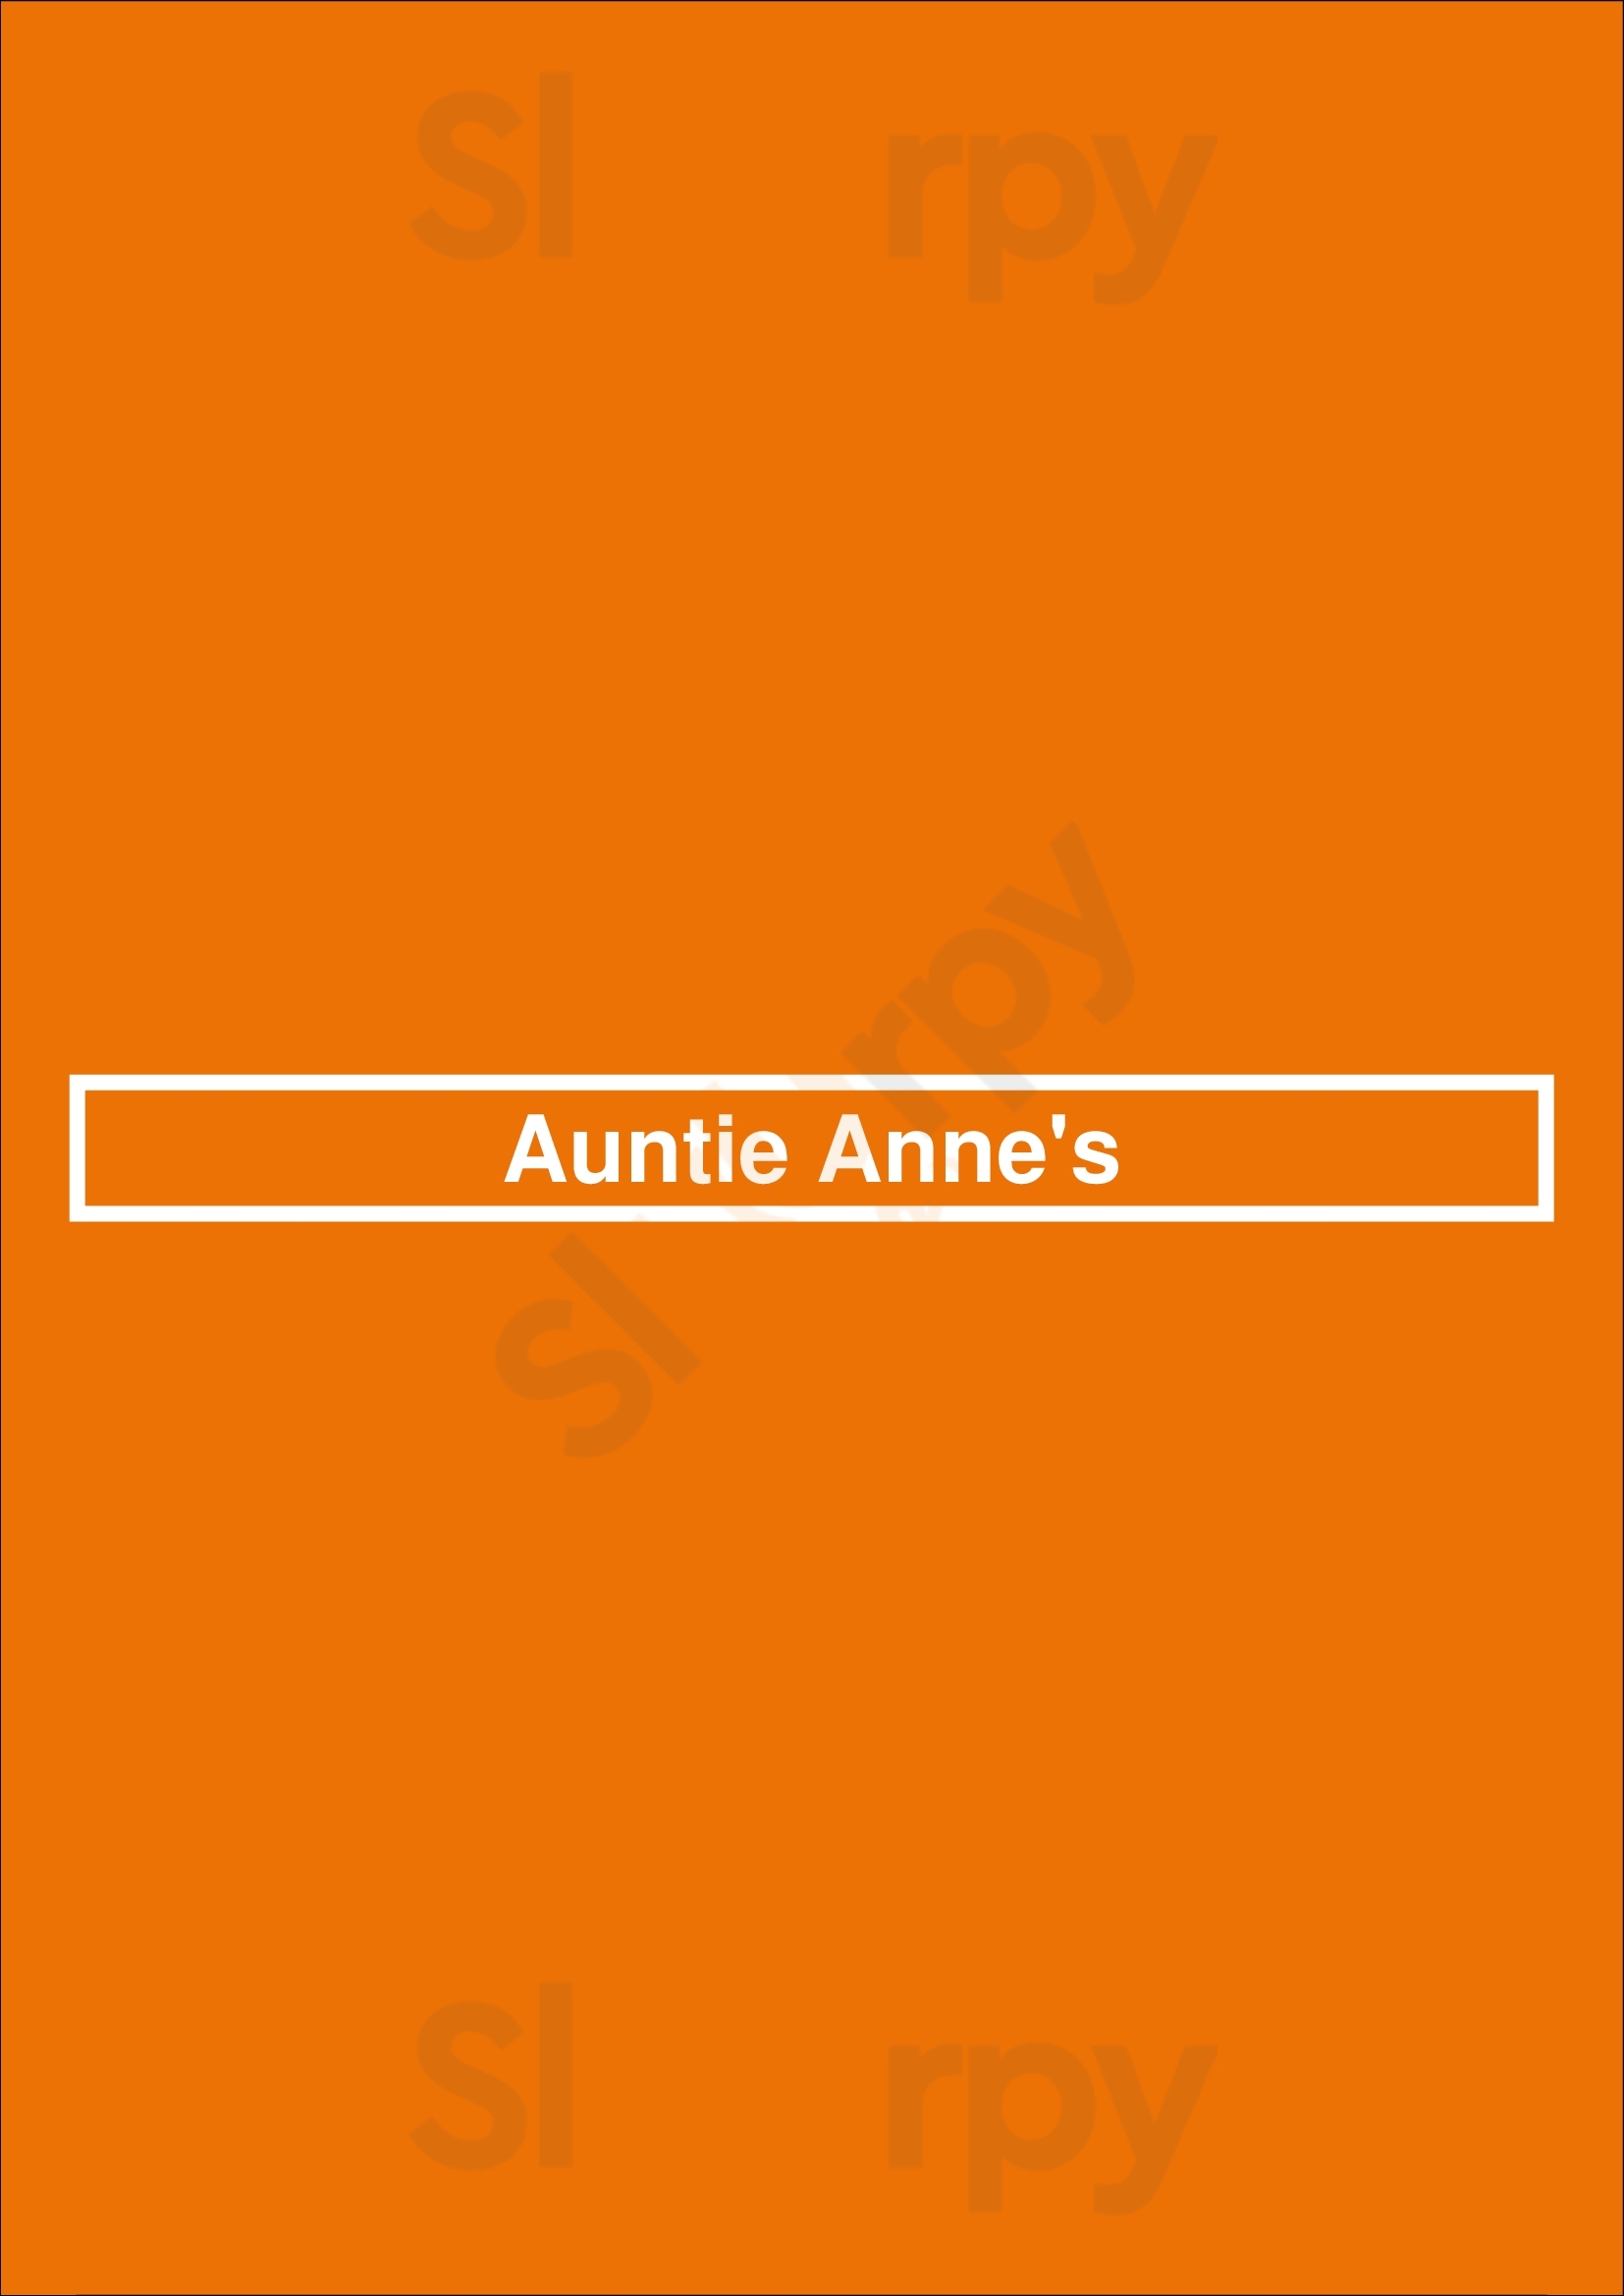 Auntie Anne's Houston Menu - 1